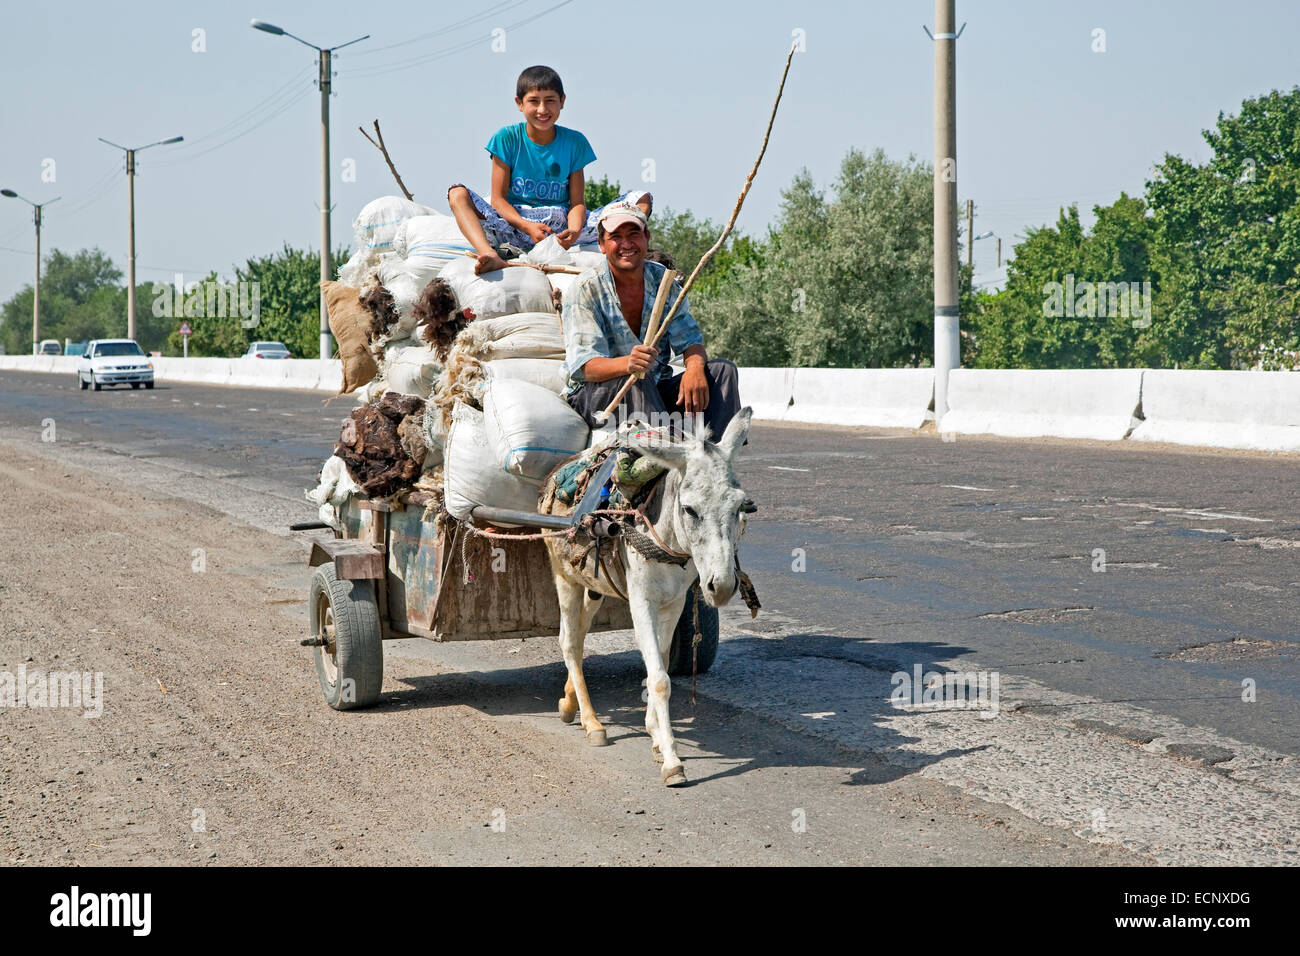 Les hommes ouzbeks équitation panier chargé avec des sacs de laine tiré par donkey le long d'une autoroute maire de Boukhara à Samarcande en Ouzbékistan Banque D'Images